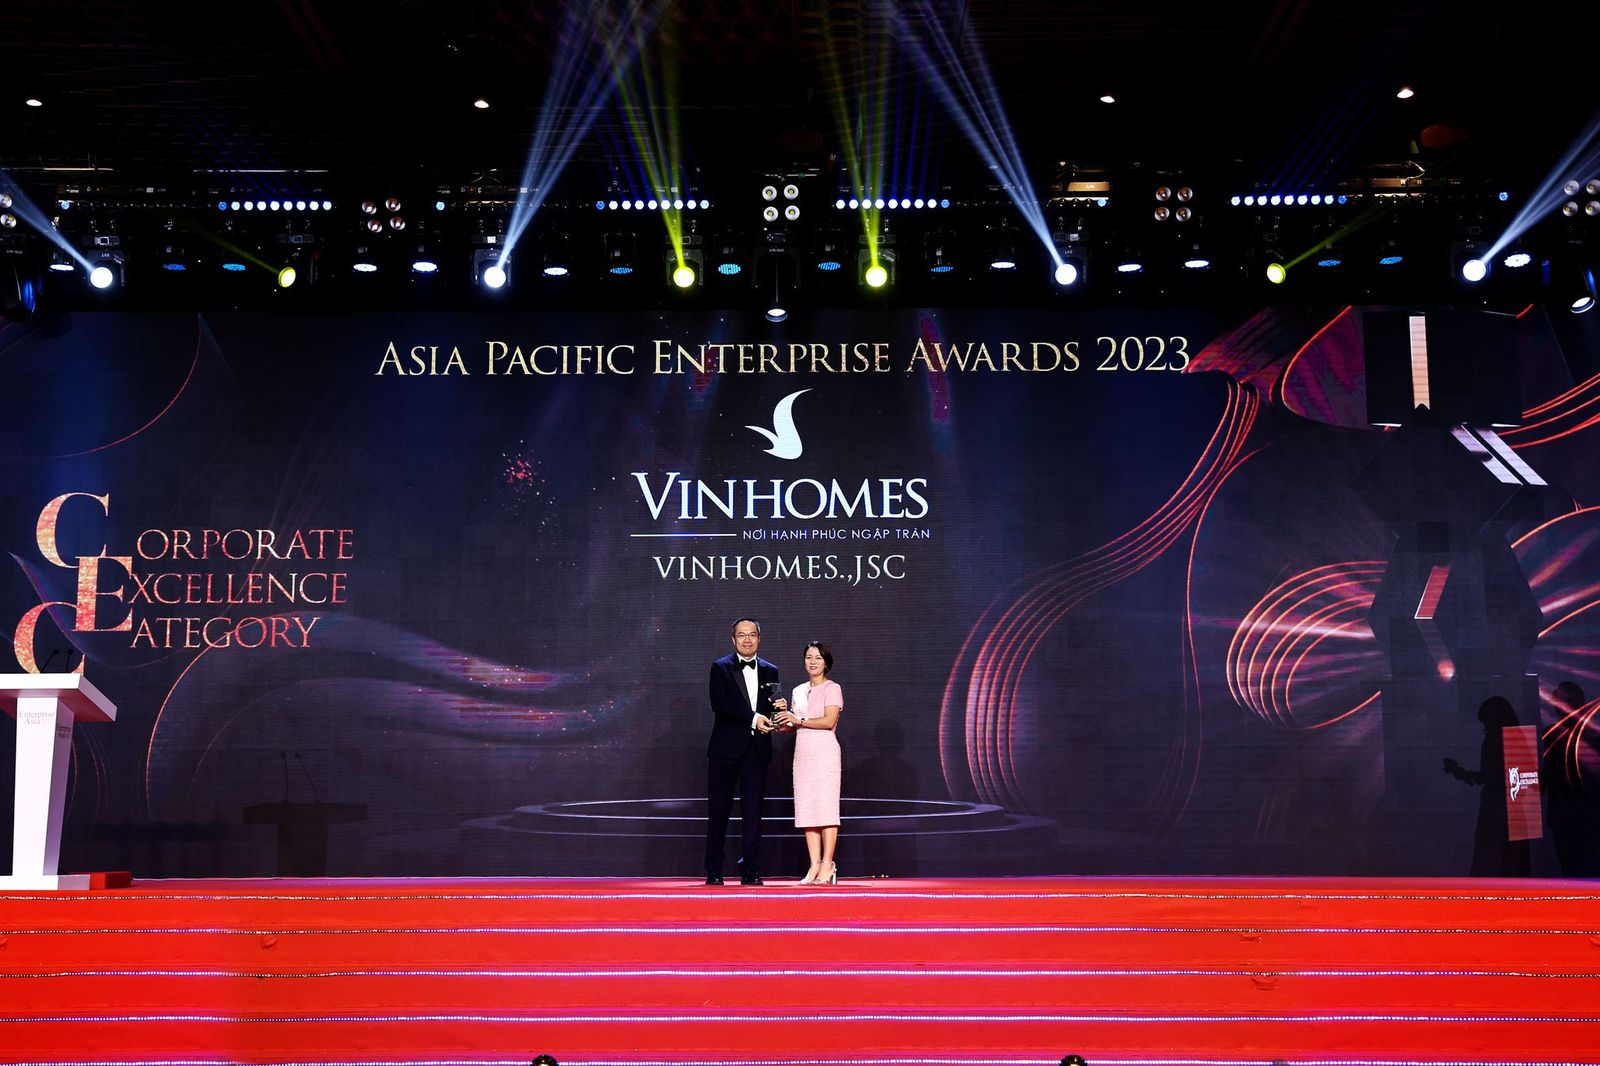 Bà Nguyễn Thu Hằng – Tổng giám đốc Công ty Cổ phần Vinhomes nhận giải thưởng.